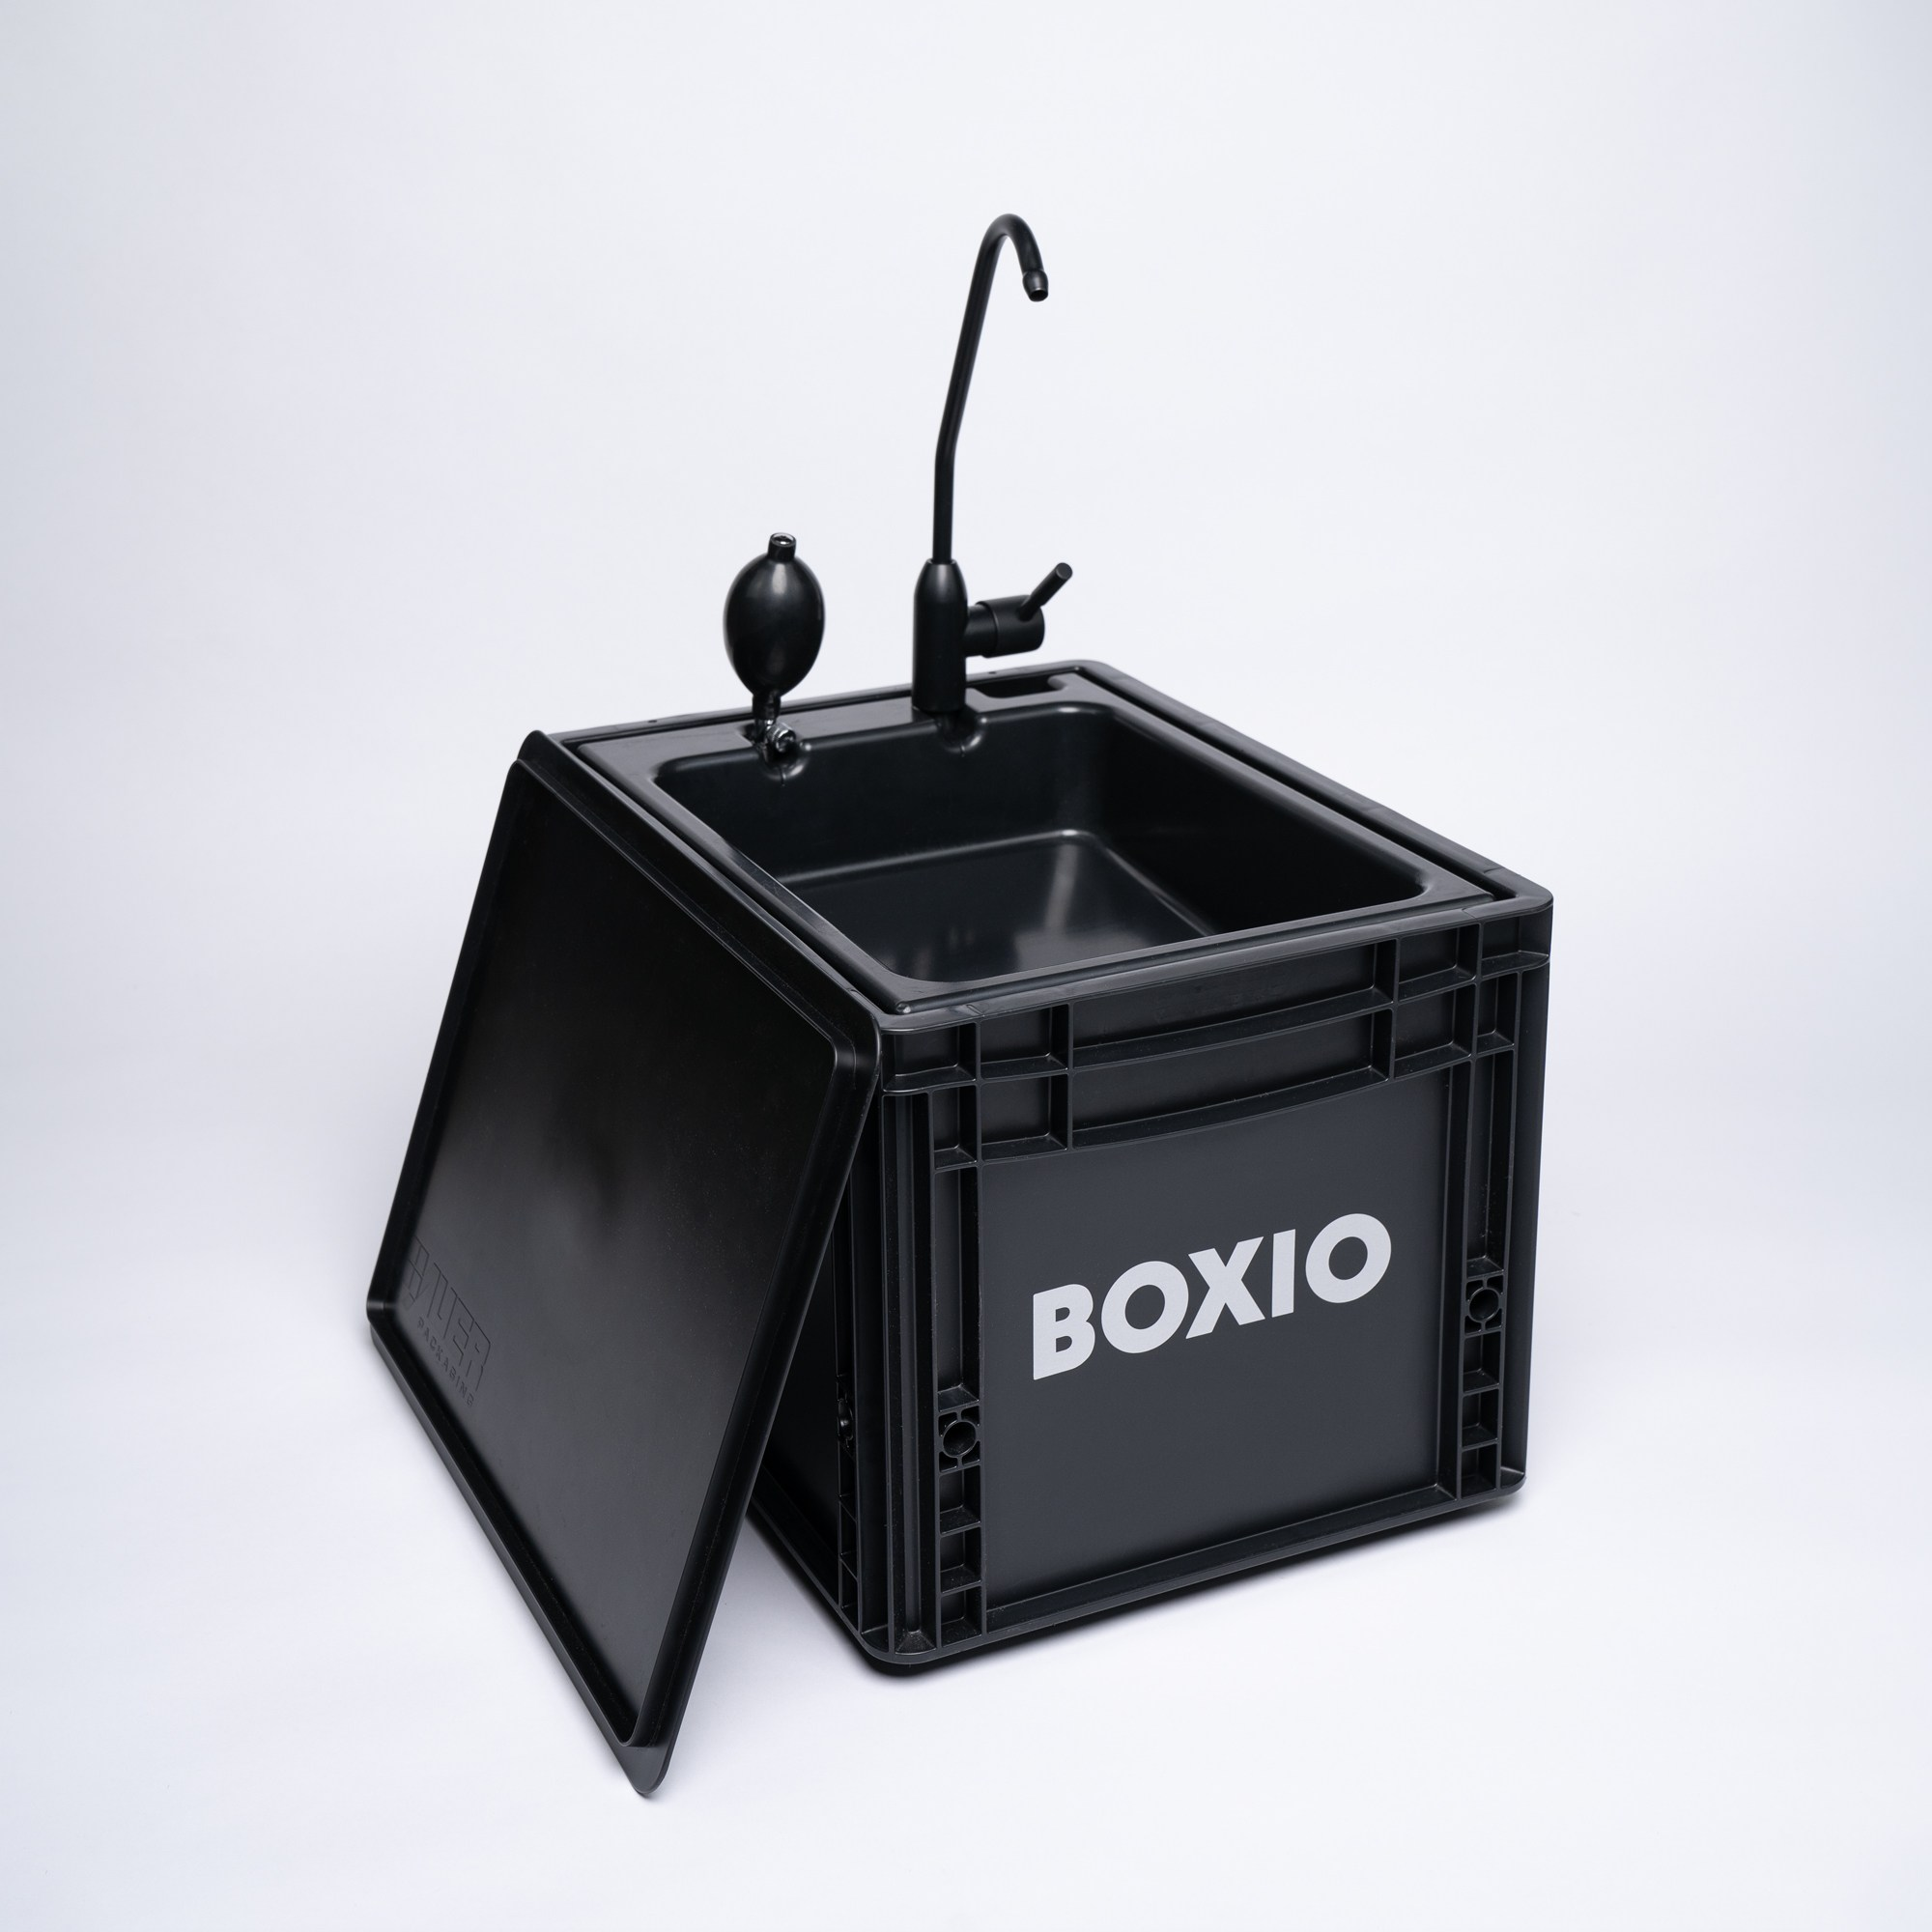 Vista completa da BOXIO-Wash: Eurobox preta com tampa dobrada, bomba e torneira